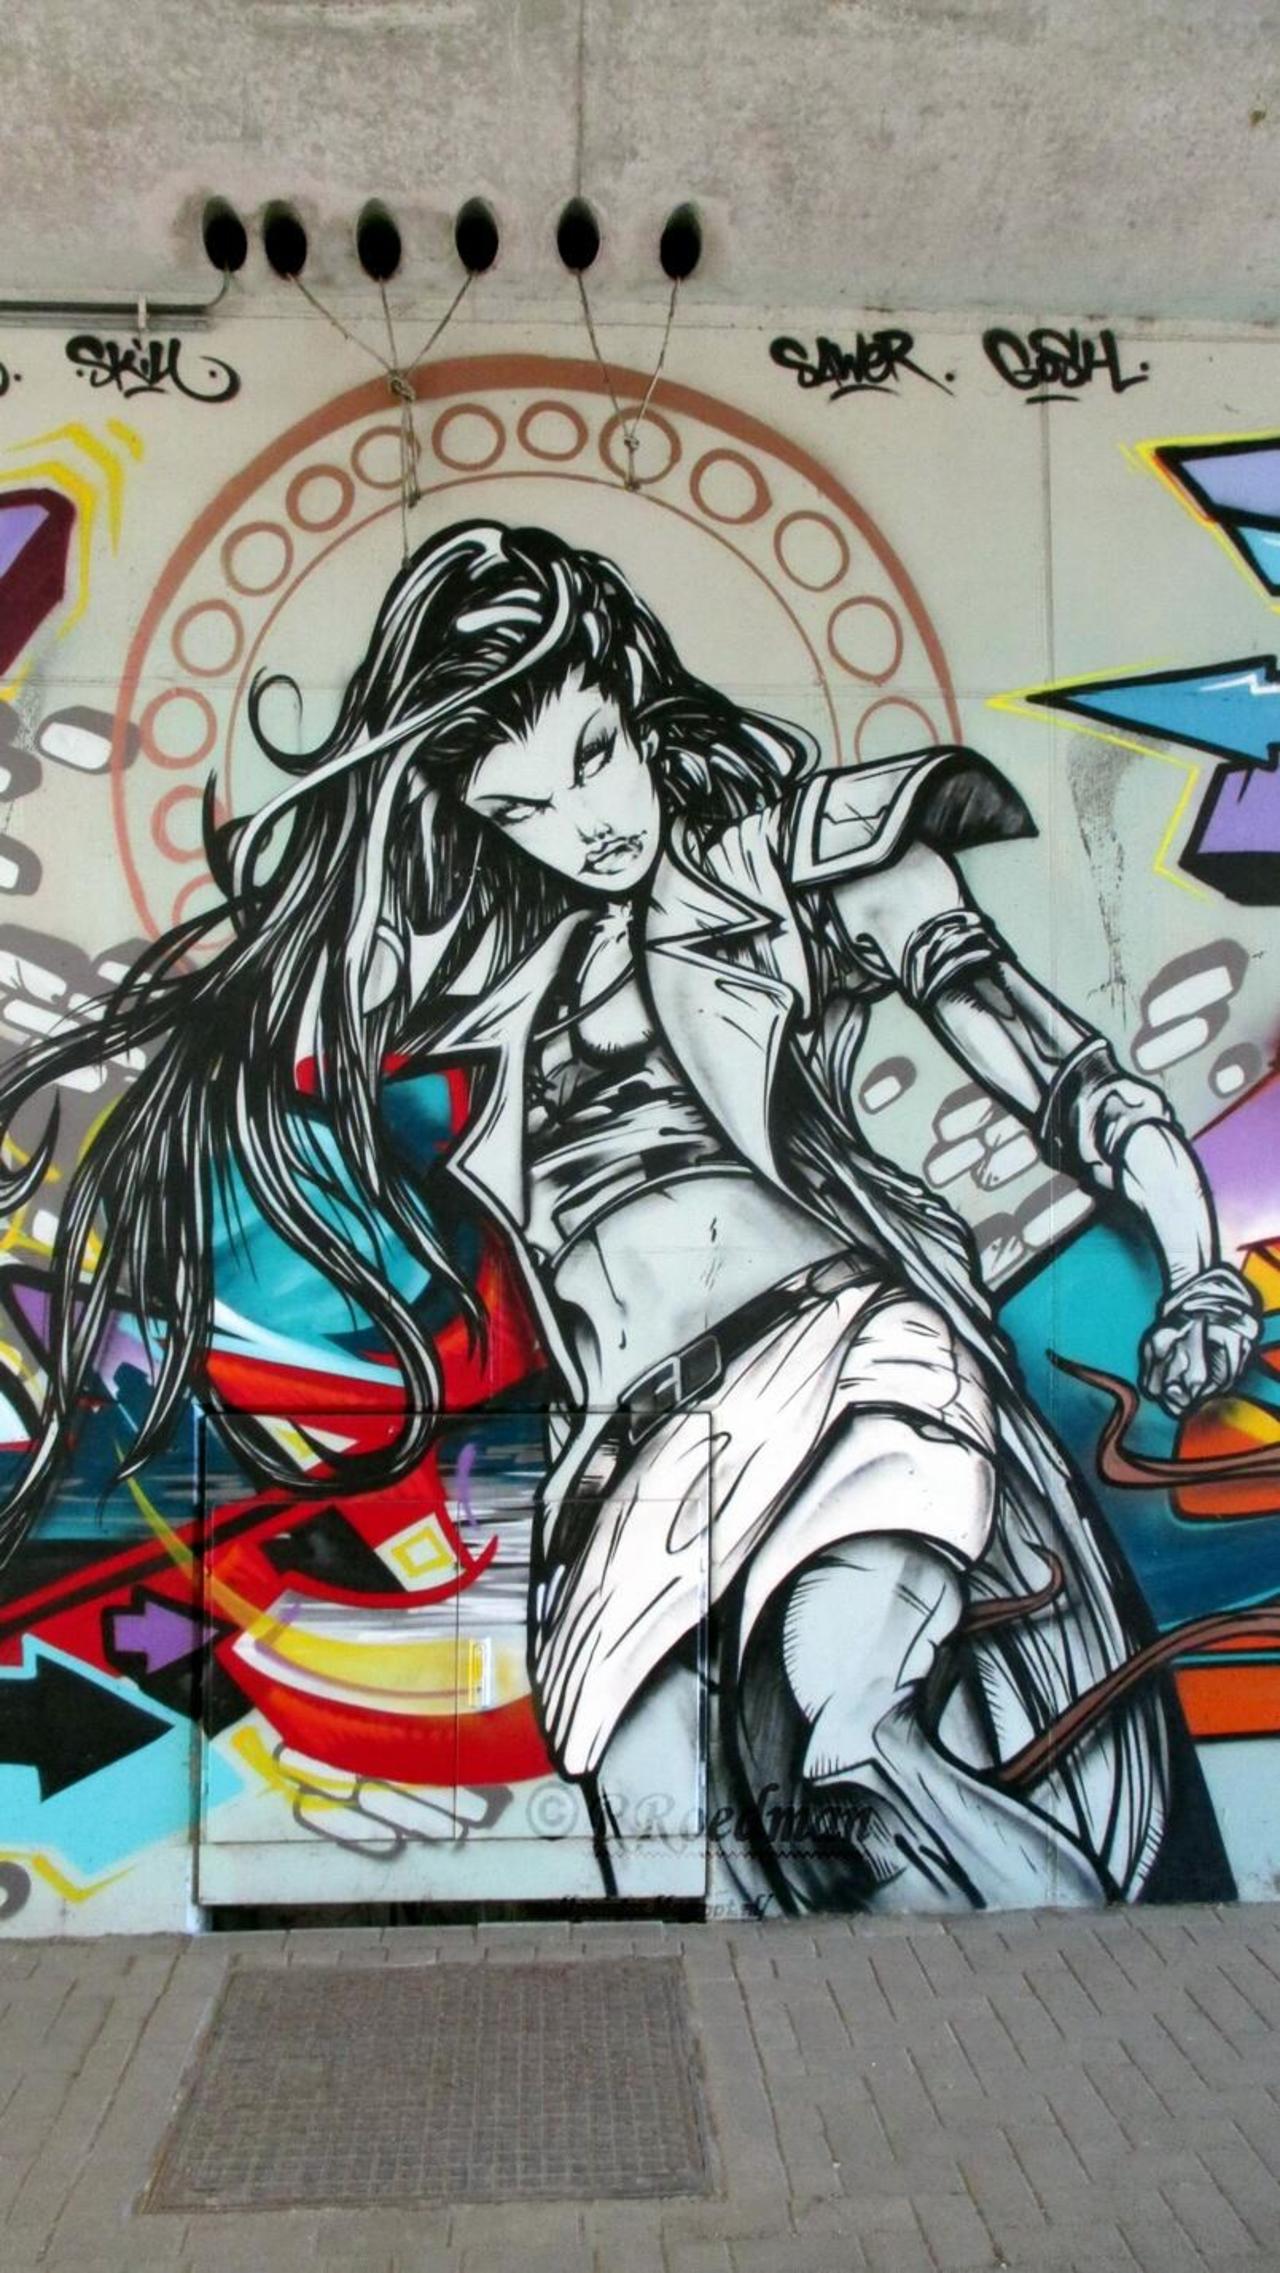 RT "@RRoedman: #streetart #graffiti #mural cartoon woman in Antwerp  3 pics at http://wallpaintss.blogspot.nl http://t.co/ZUGHOUx09Z”